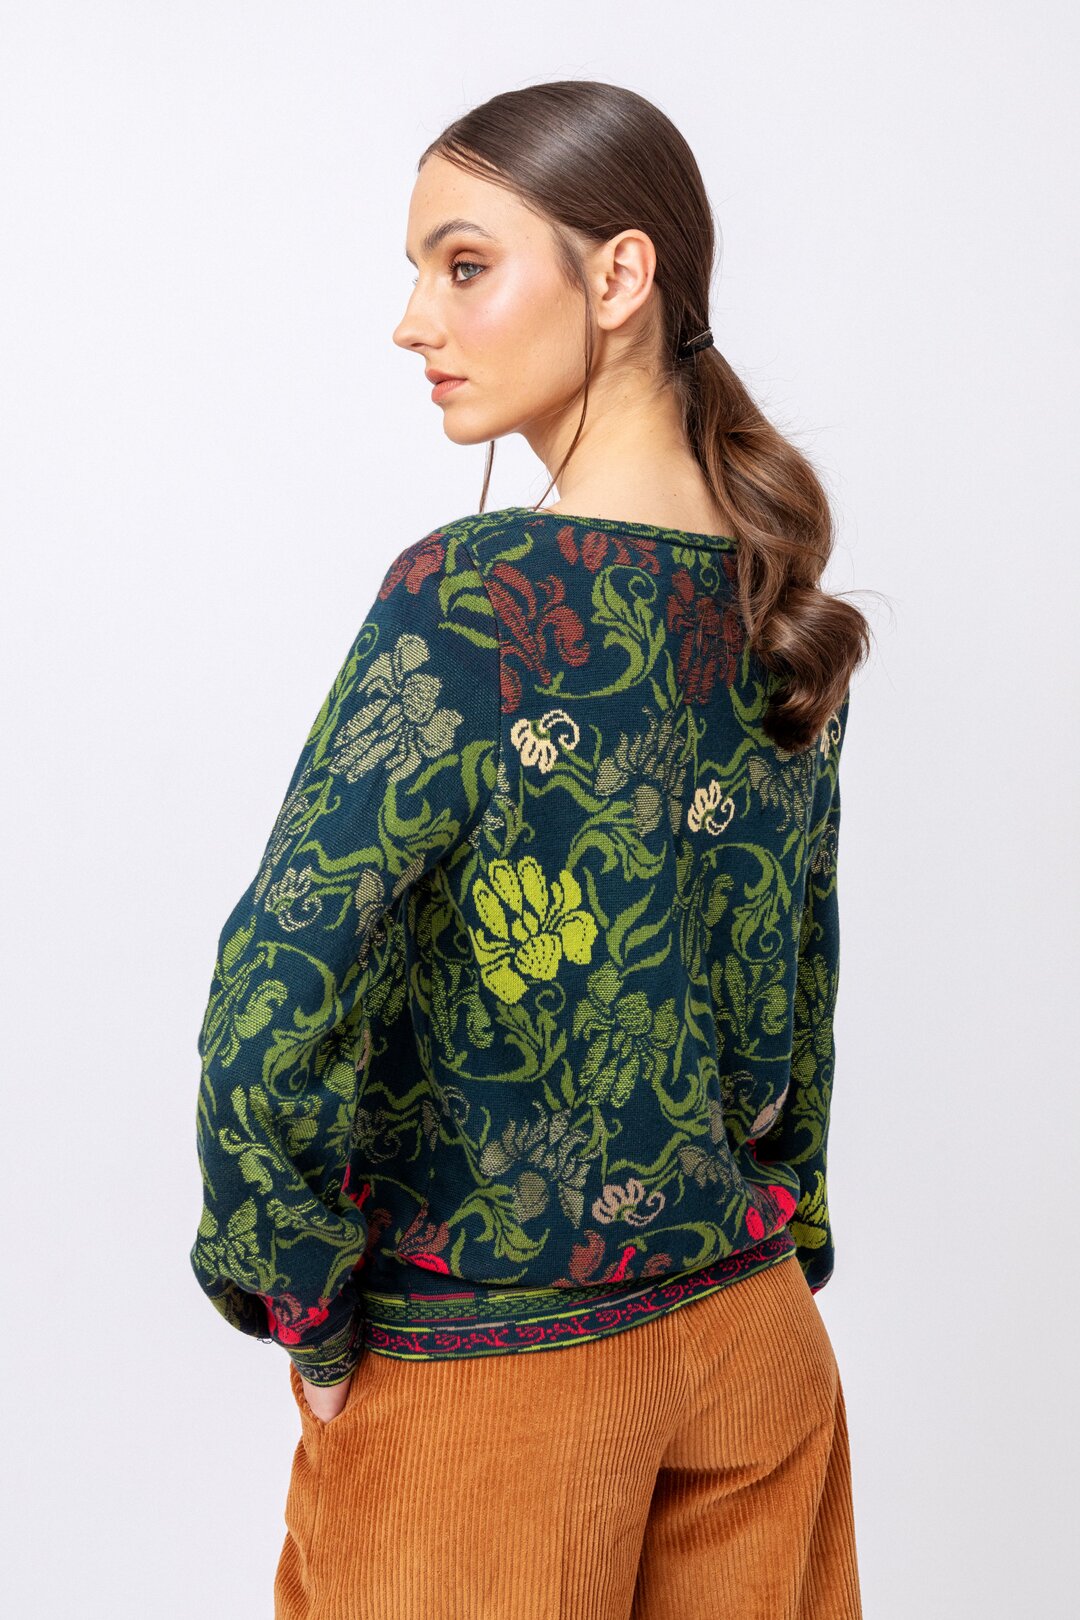 Jacquard Pullover, Grasset Floral Pattern